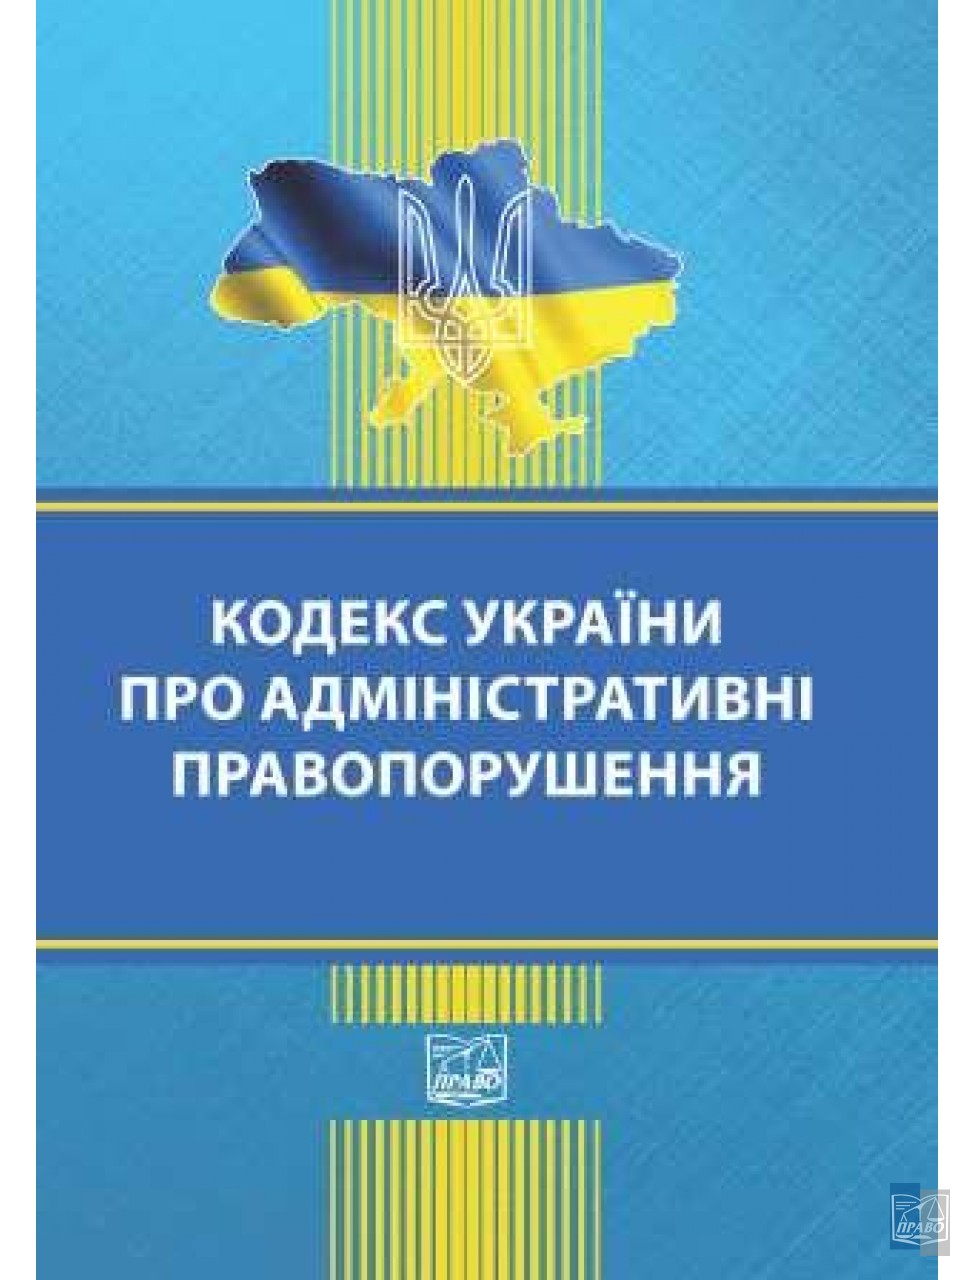 Кодекс України про адміністративні правопорушення є основним нормативно-правовим актом, який регулює відносини, пов